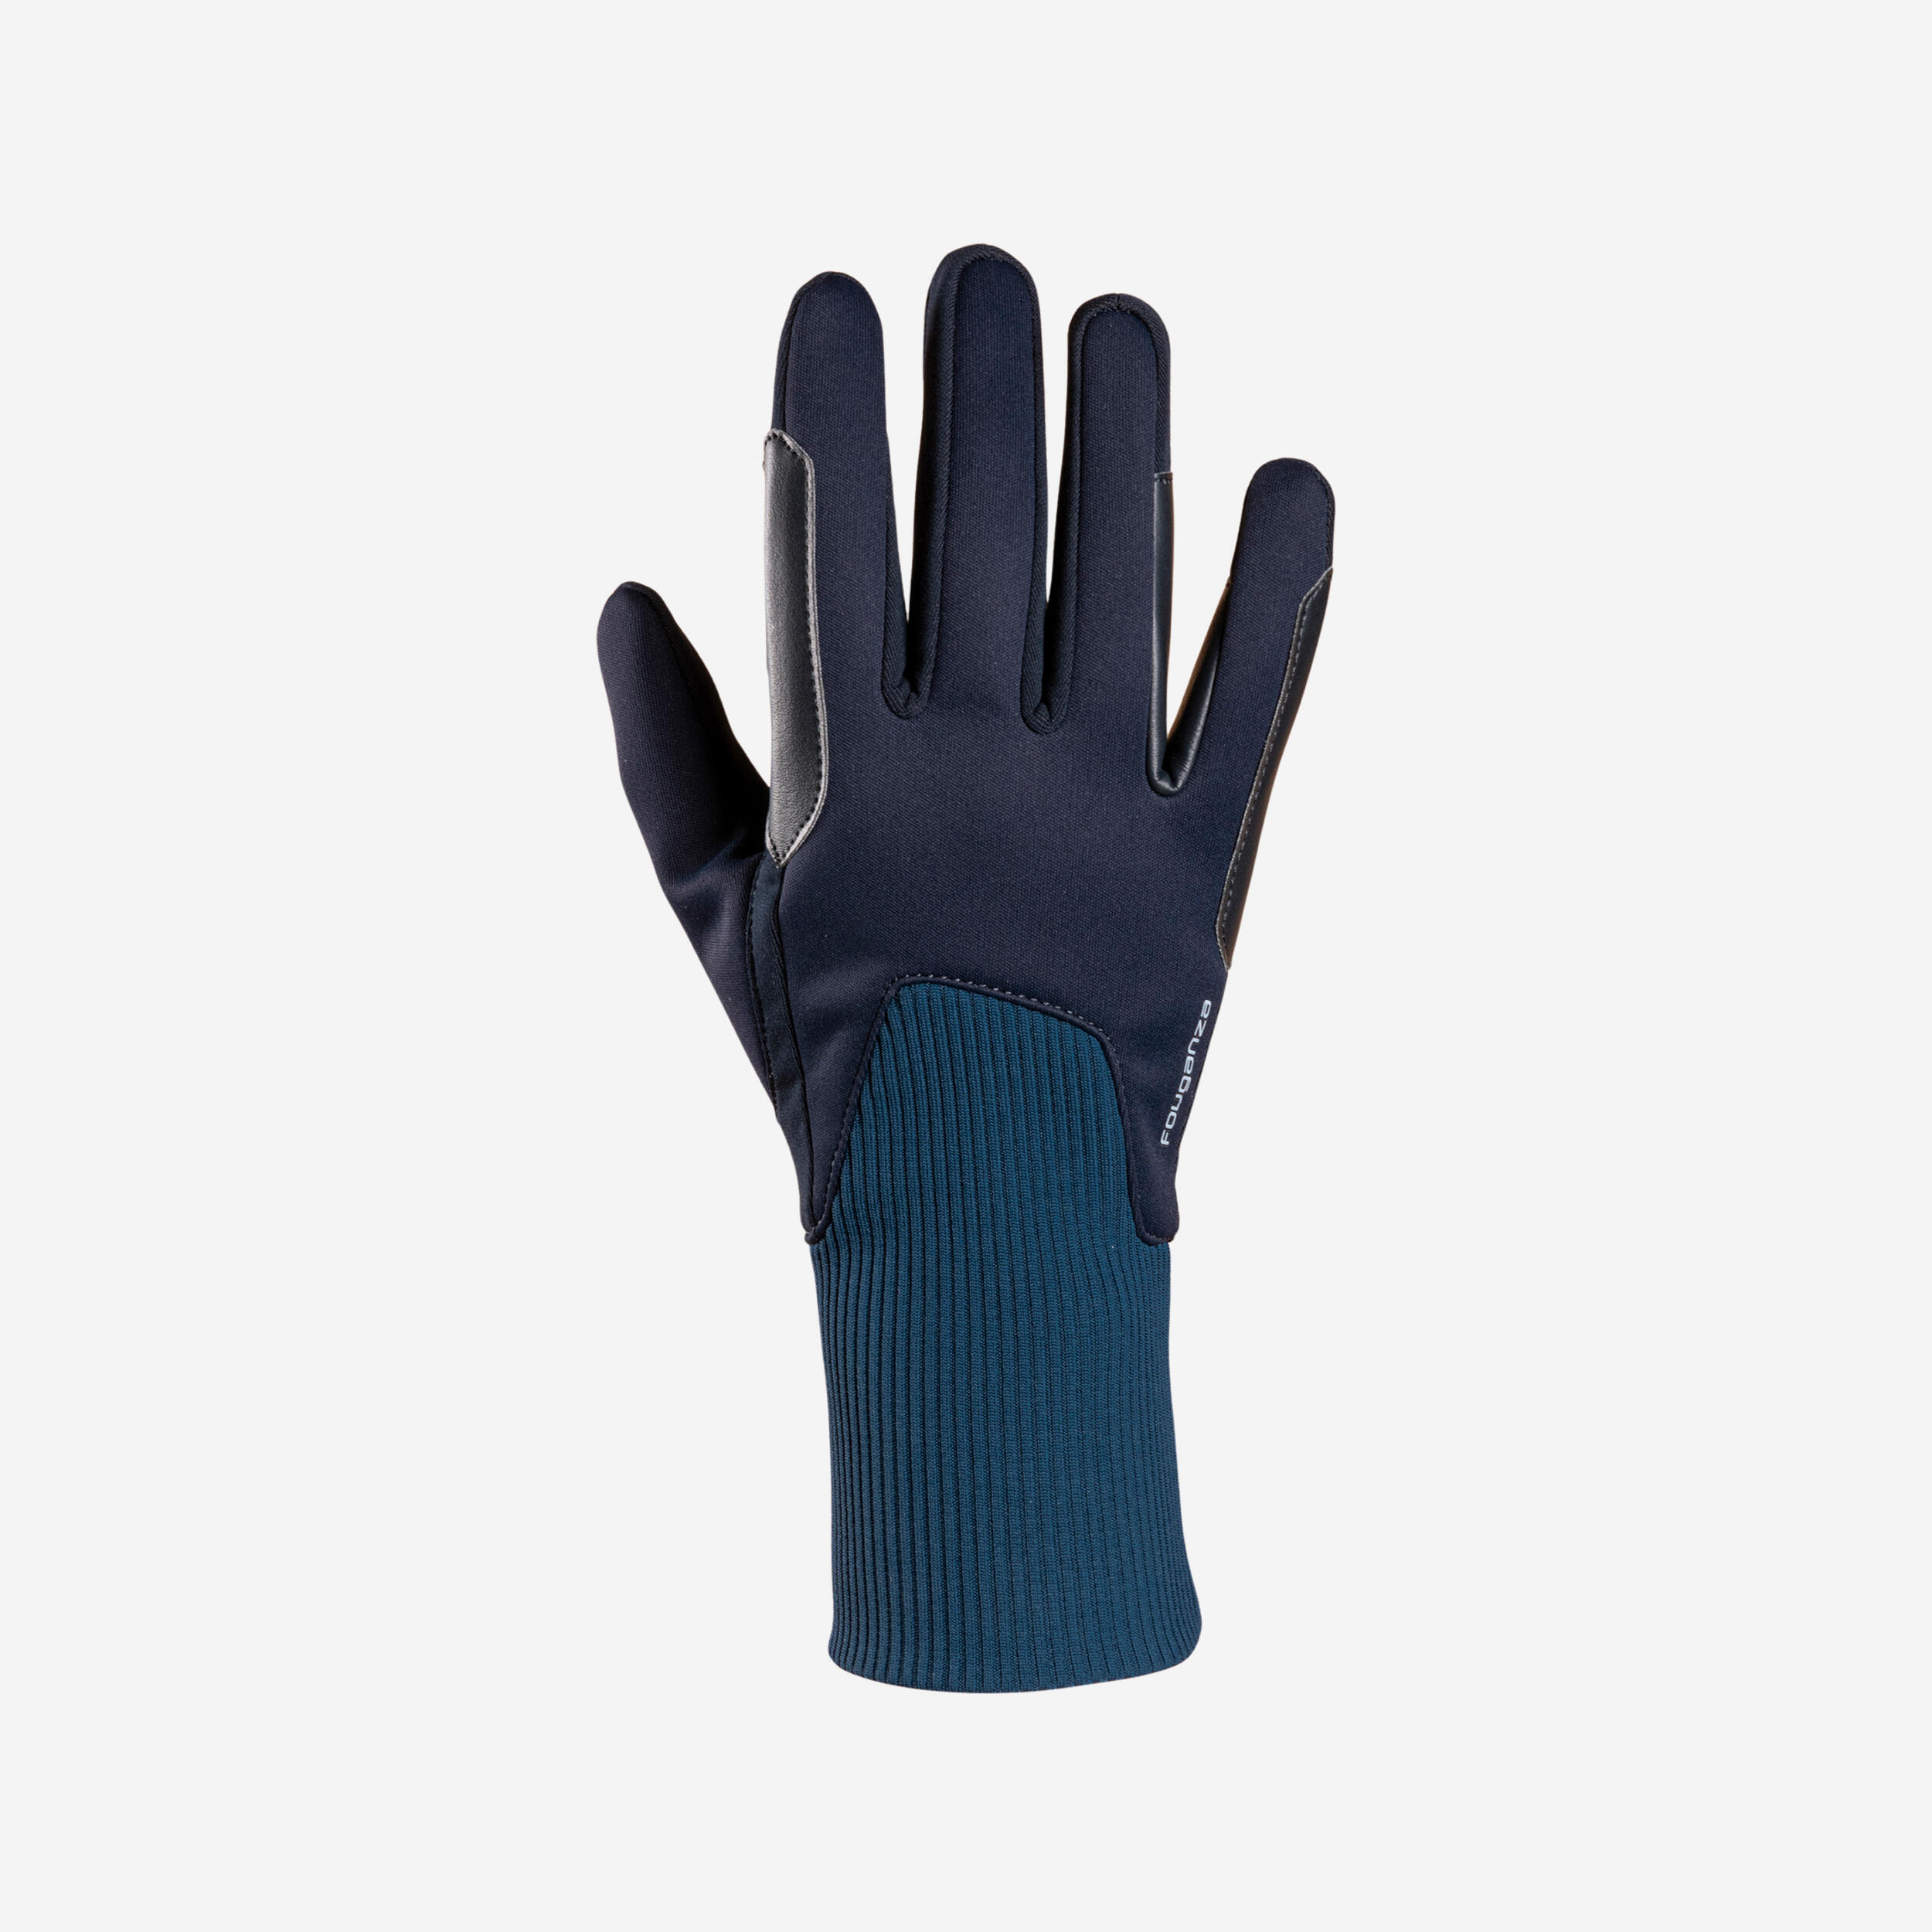 gants chauds d'équitation enfant 140 warm marine et bleu turquin - fouganza